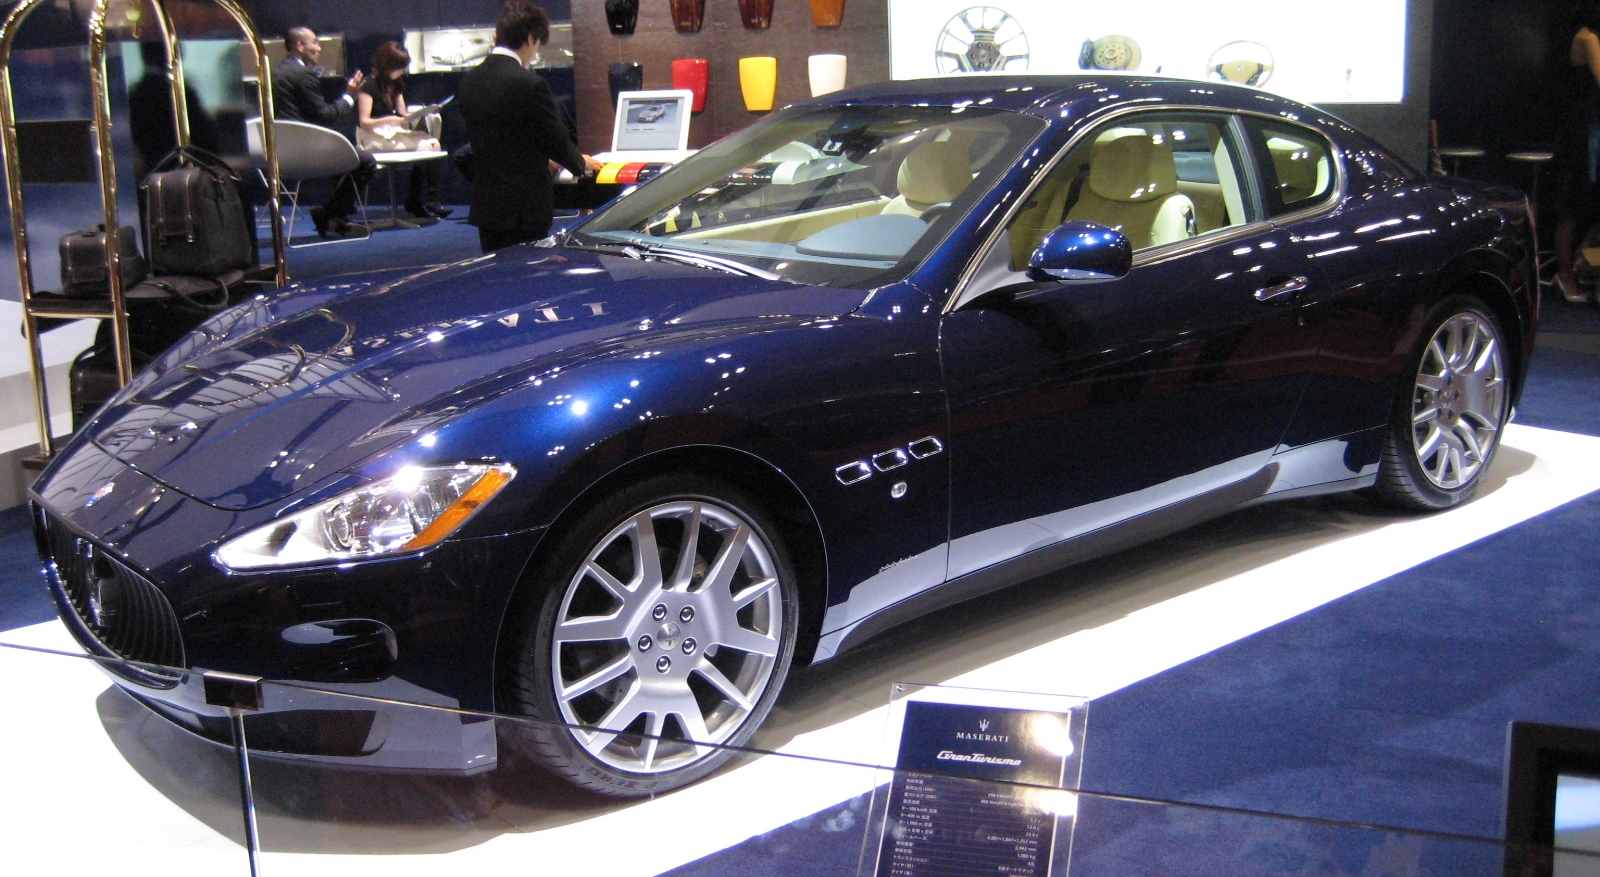 Maserati+granturismo+interior+pictures